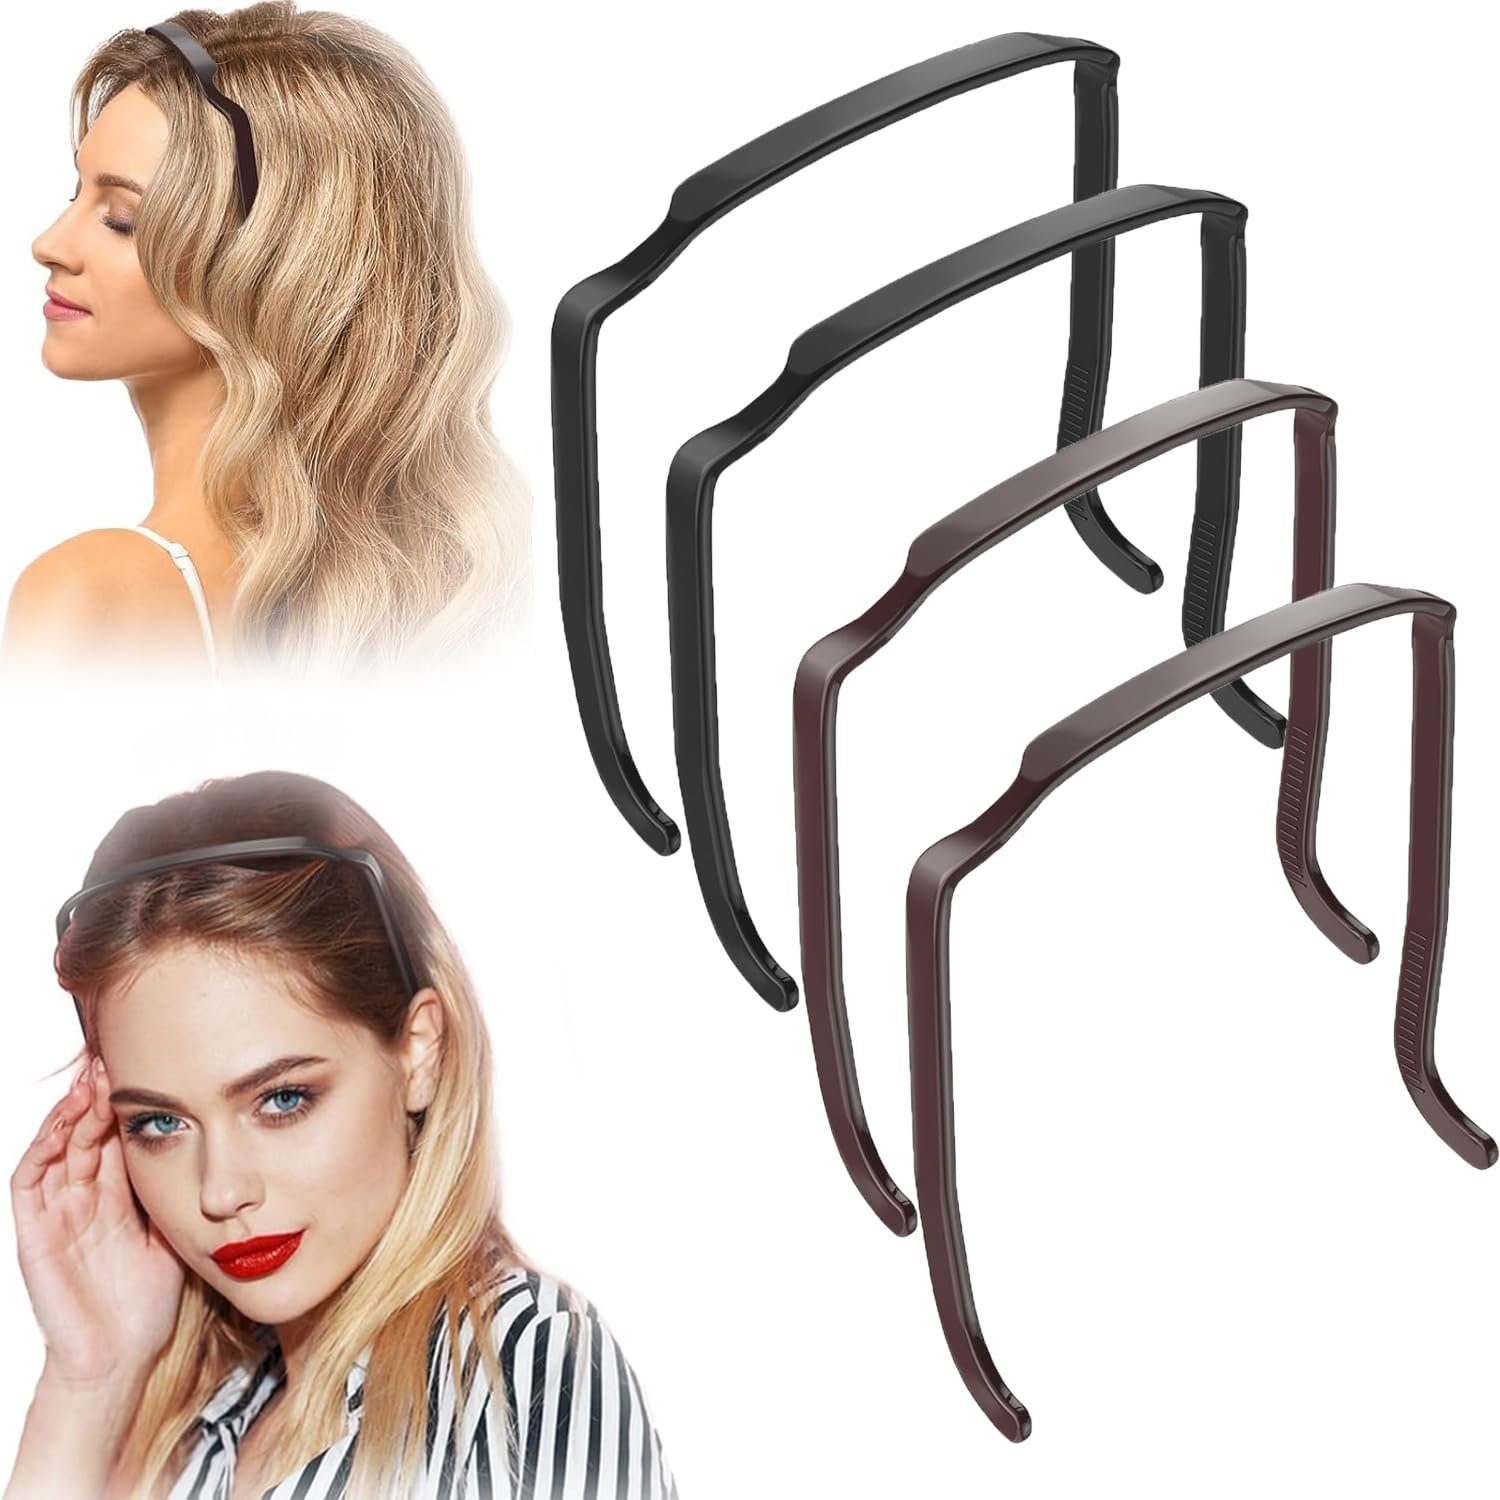 Jioson Haarstyling-Set Stirnbänder Rutschfeste Kunststoff 4 Stück, 4-st, Rutschfeste Kunststoff Stirnbänder für Frauen, können für Make-up, Gesichtsreinigung, Masken